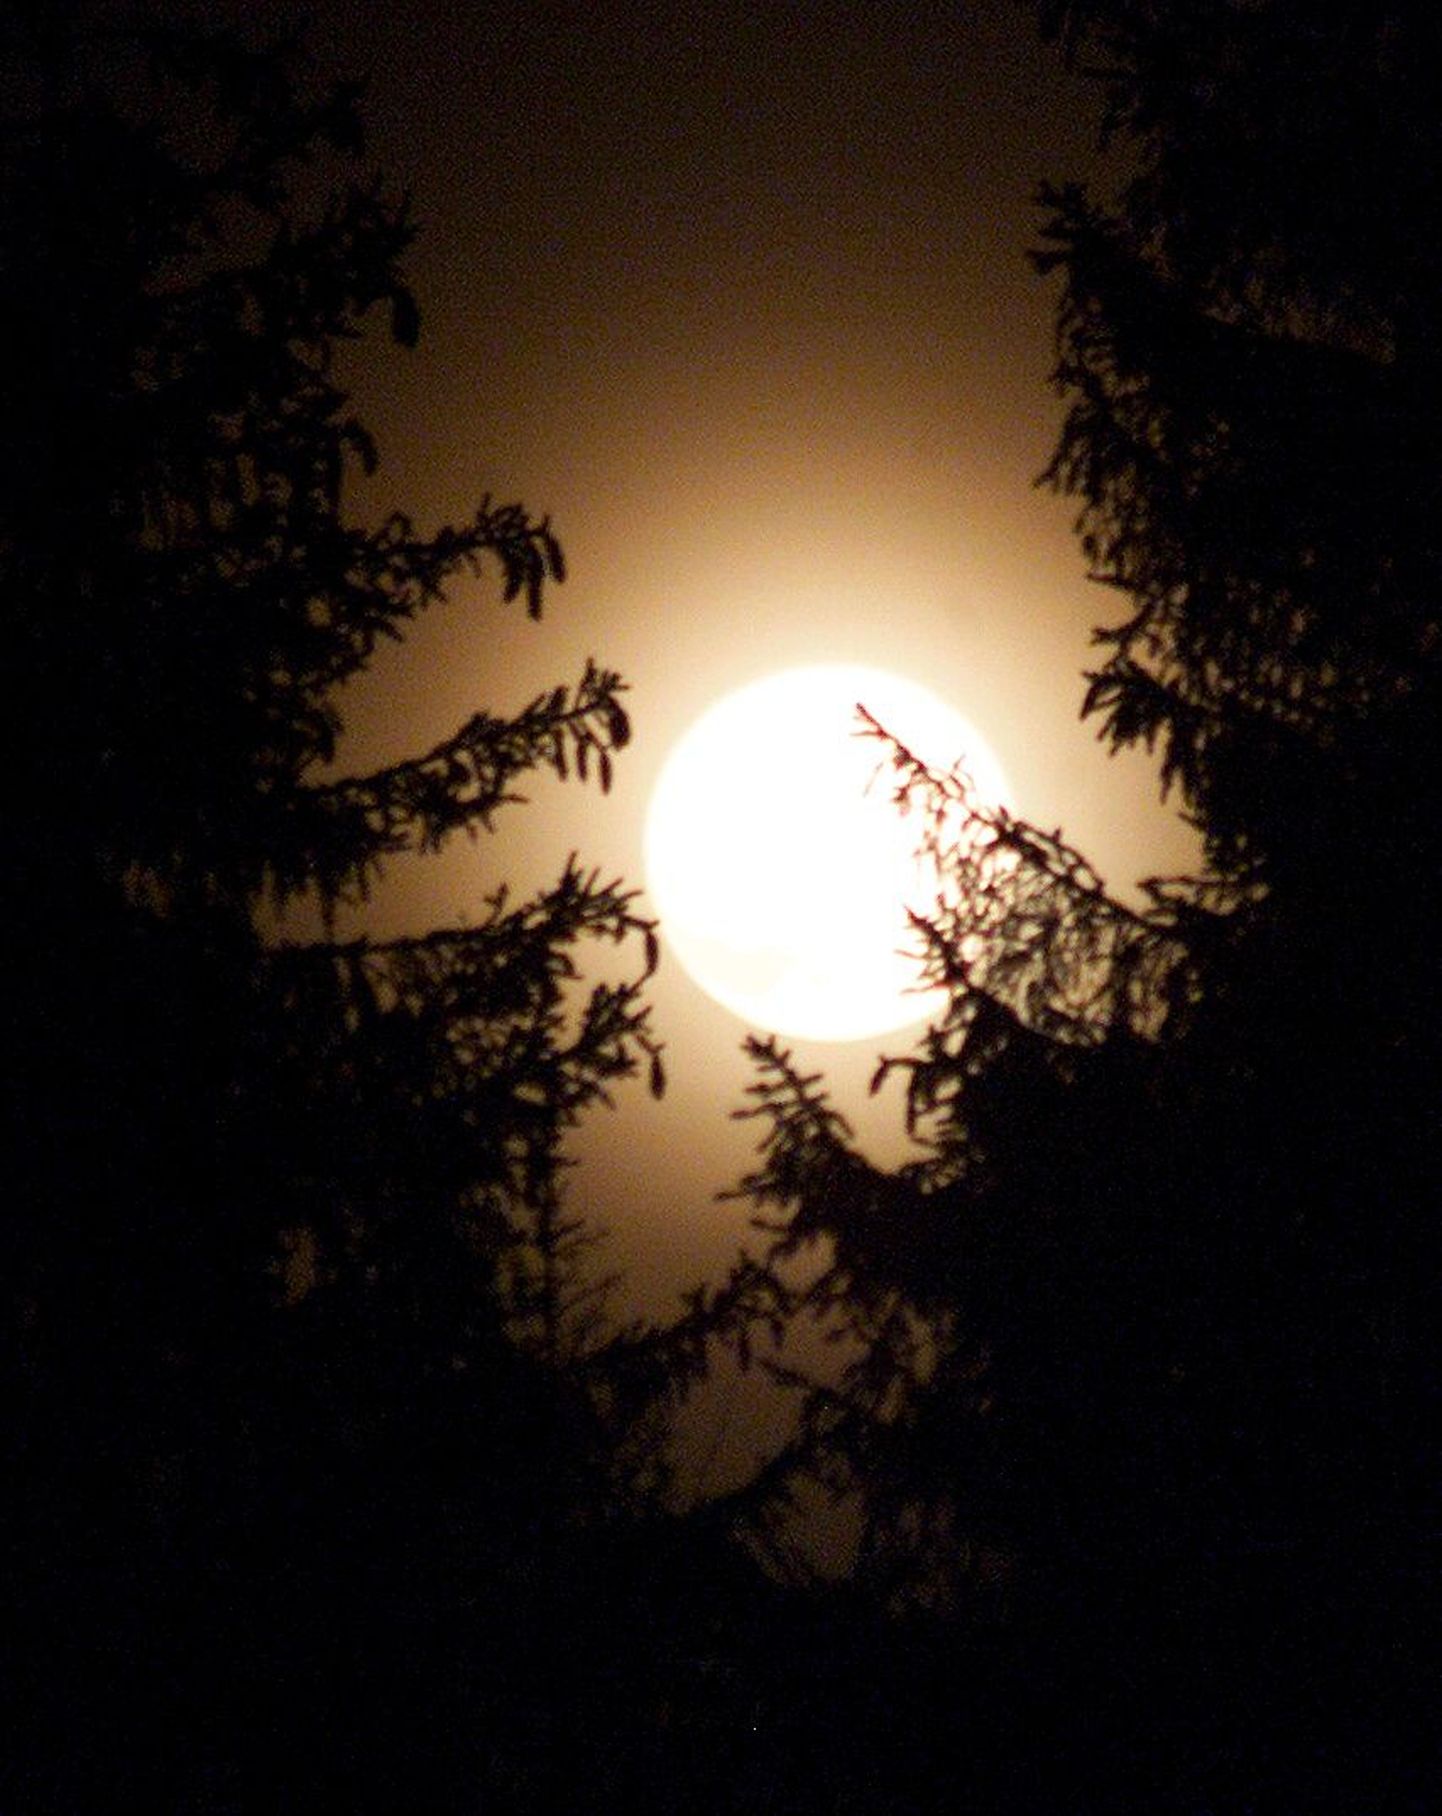 Kahtlemata on saabuv öö kuuvalguses müstiline ja salapärane. Kui uskumus, et täiskuu ajal alati midagi veidrat juhtub, on kinnistunud, siis küllab juhtubki ...